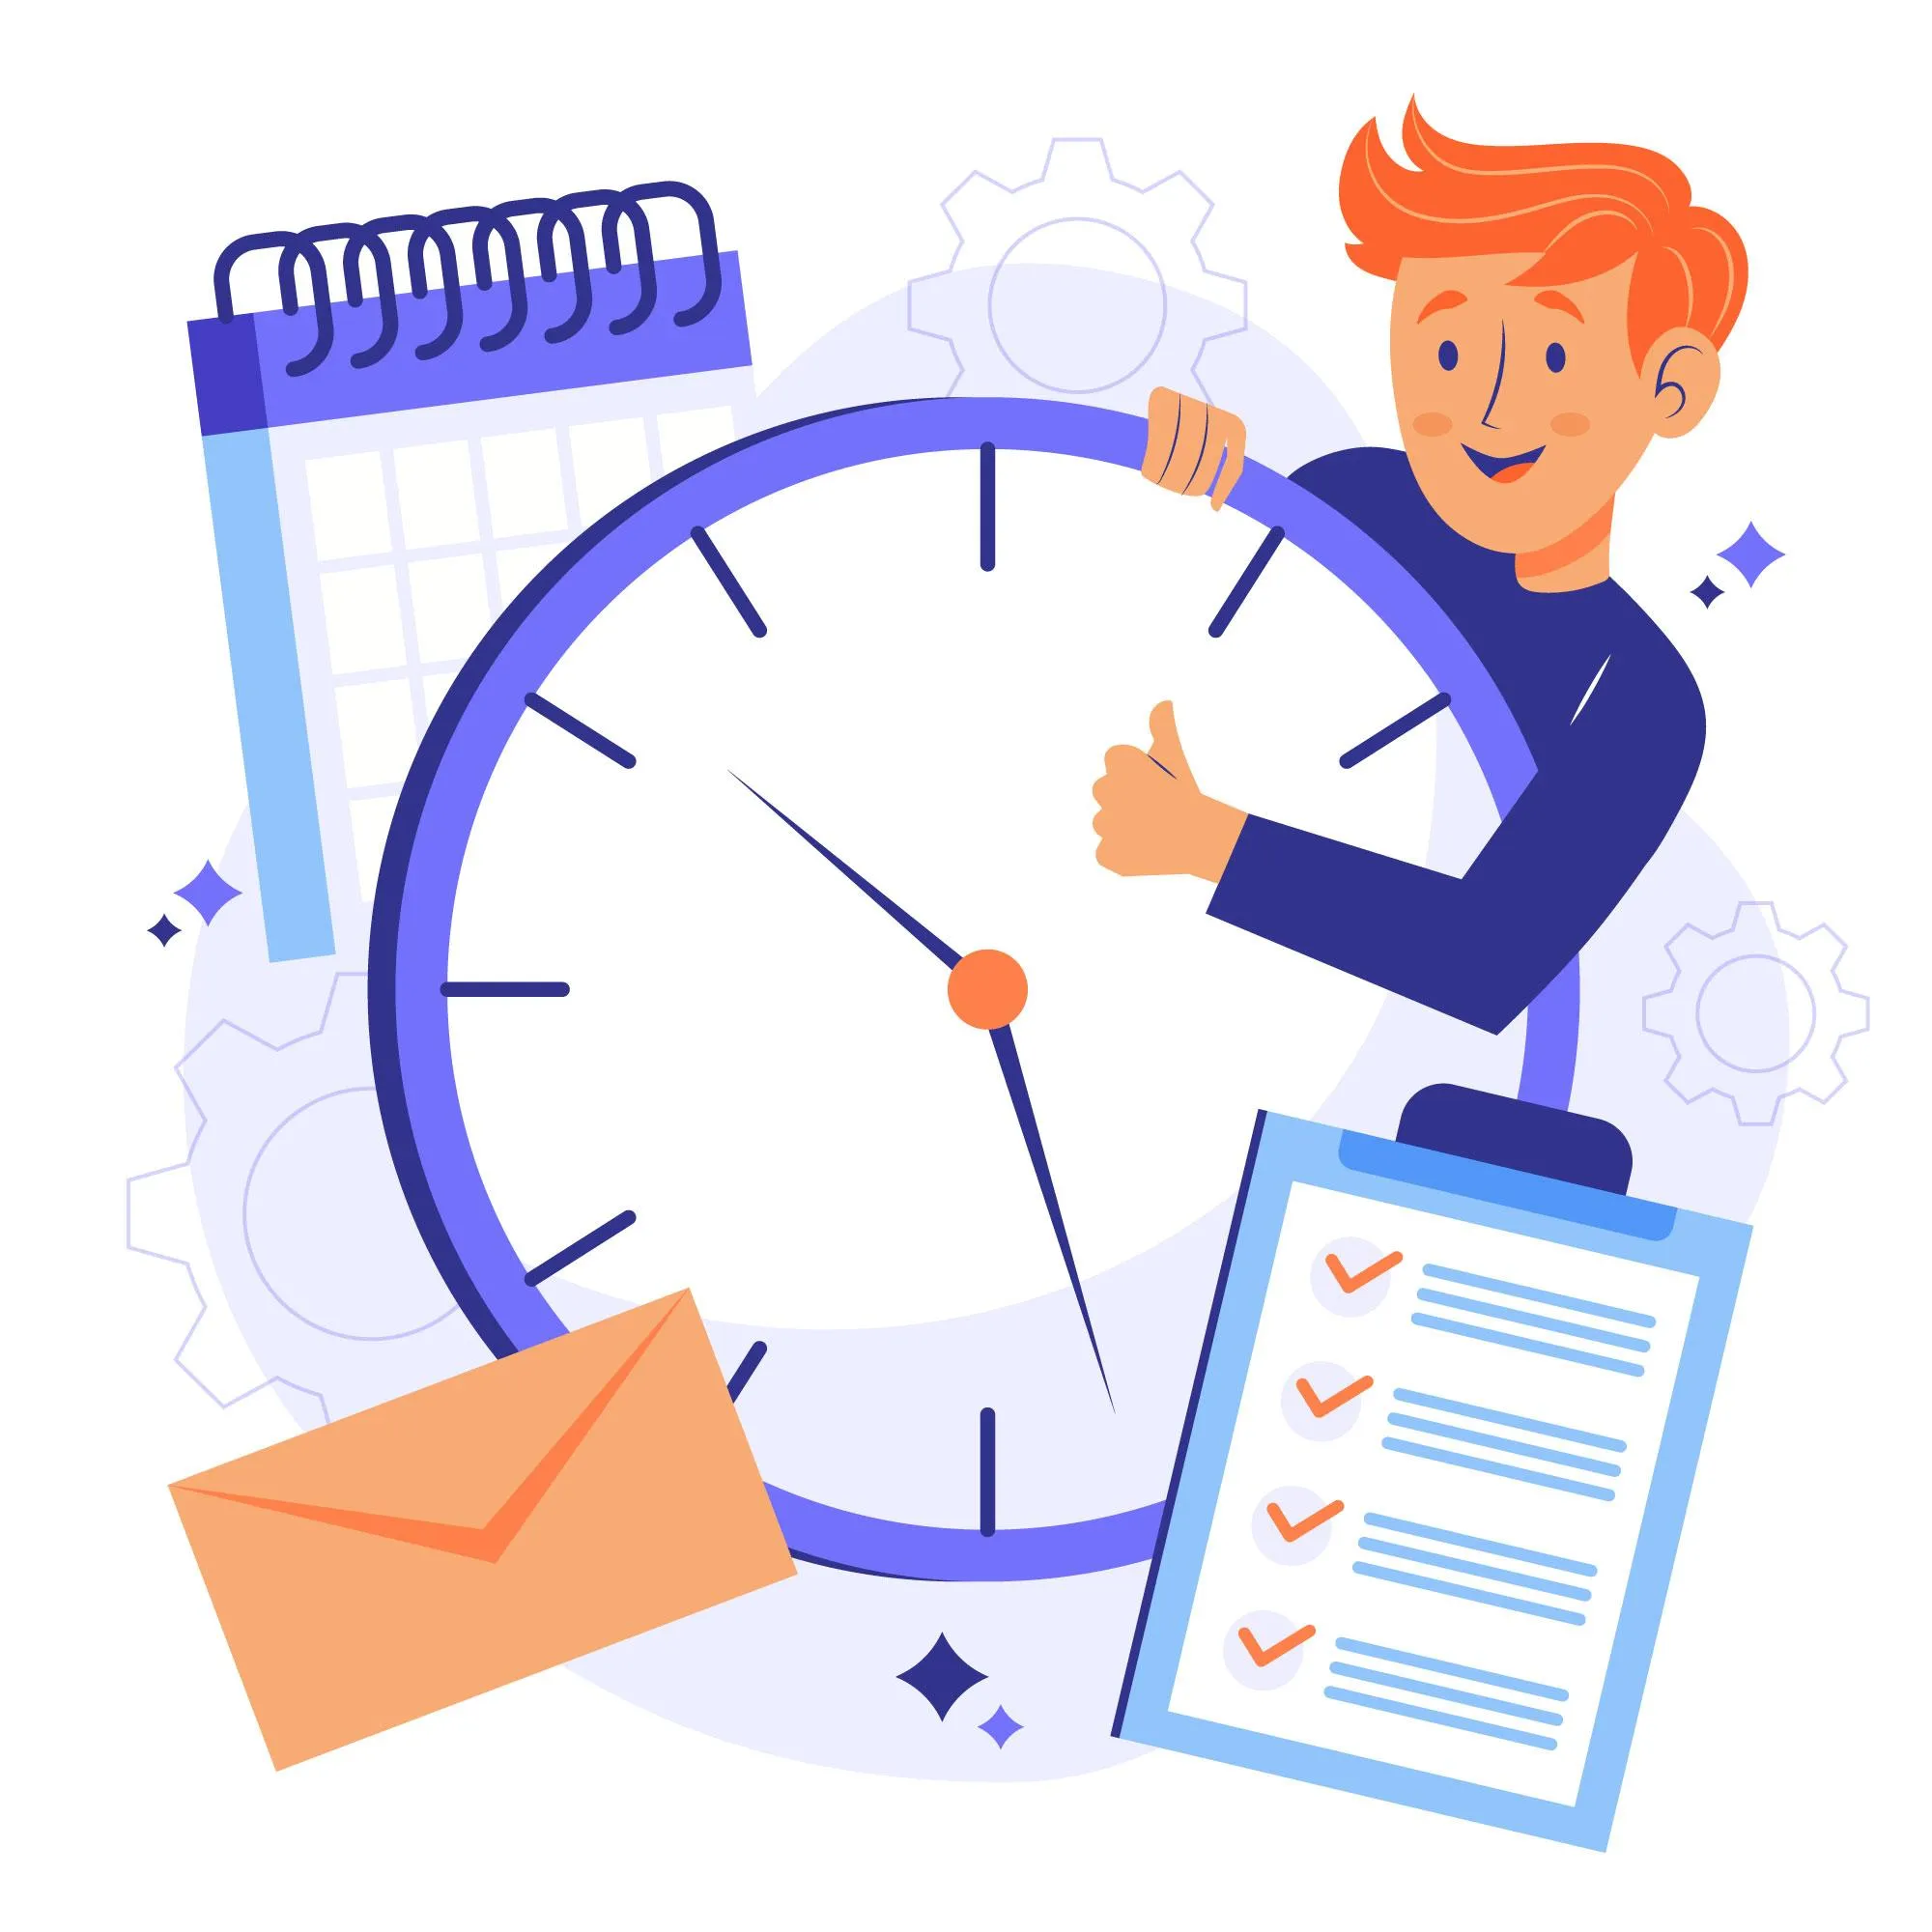 Professionnel optimiste tenant une grande horloge symbolisant une gestion efficace du temps, avec une liste de tâches cochées et des éléments de productivité comme une enveloppe et un calendrier, pour illustrer des stratégies sur comment gagner du temps et augmenter la productivité.